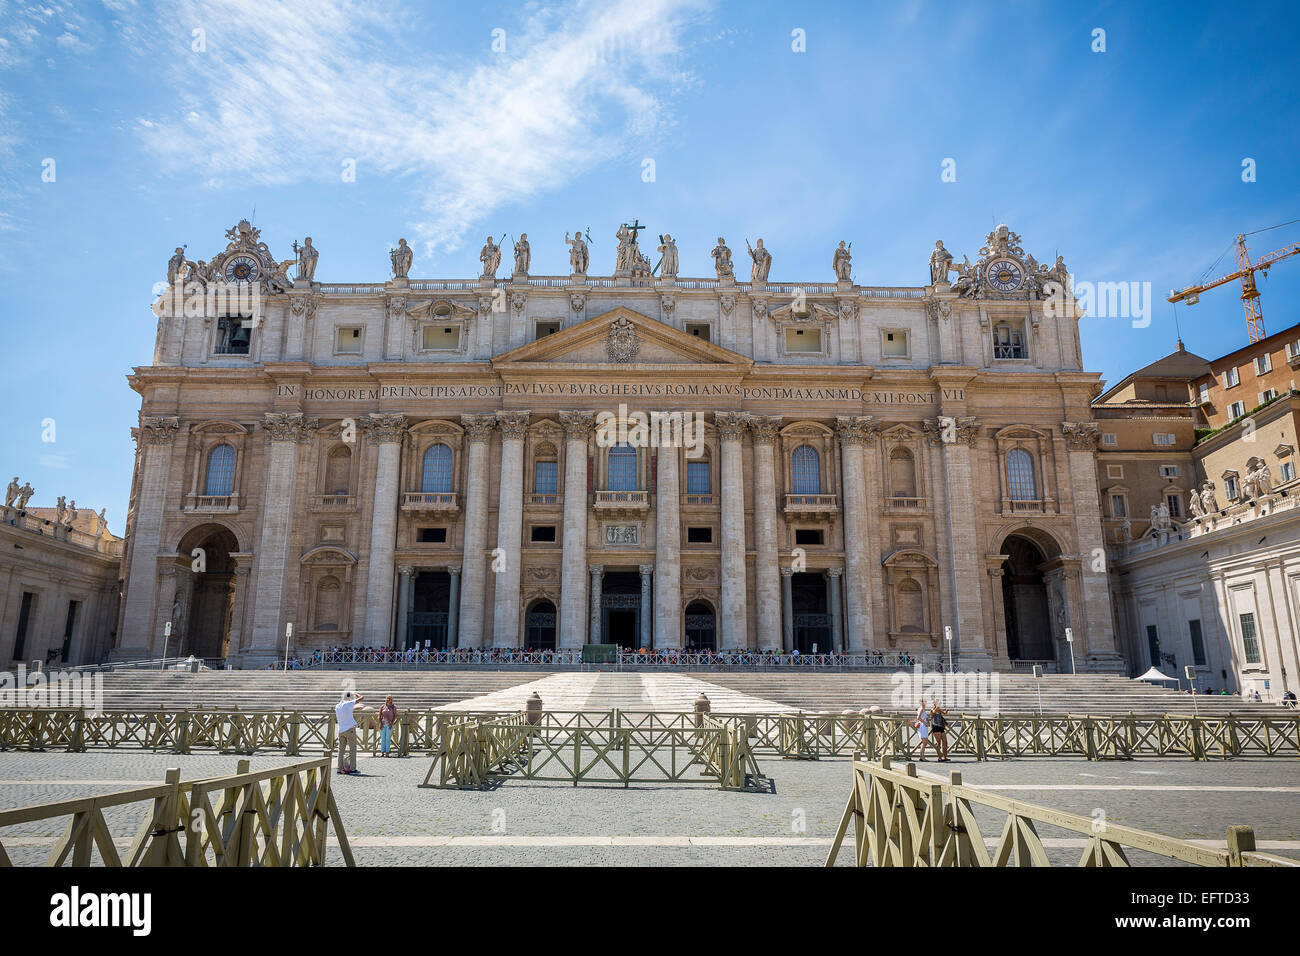 La cathédrale Saint Pierre. Rome, Italie Banque D'Images